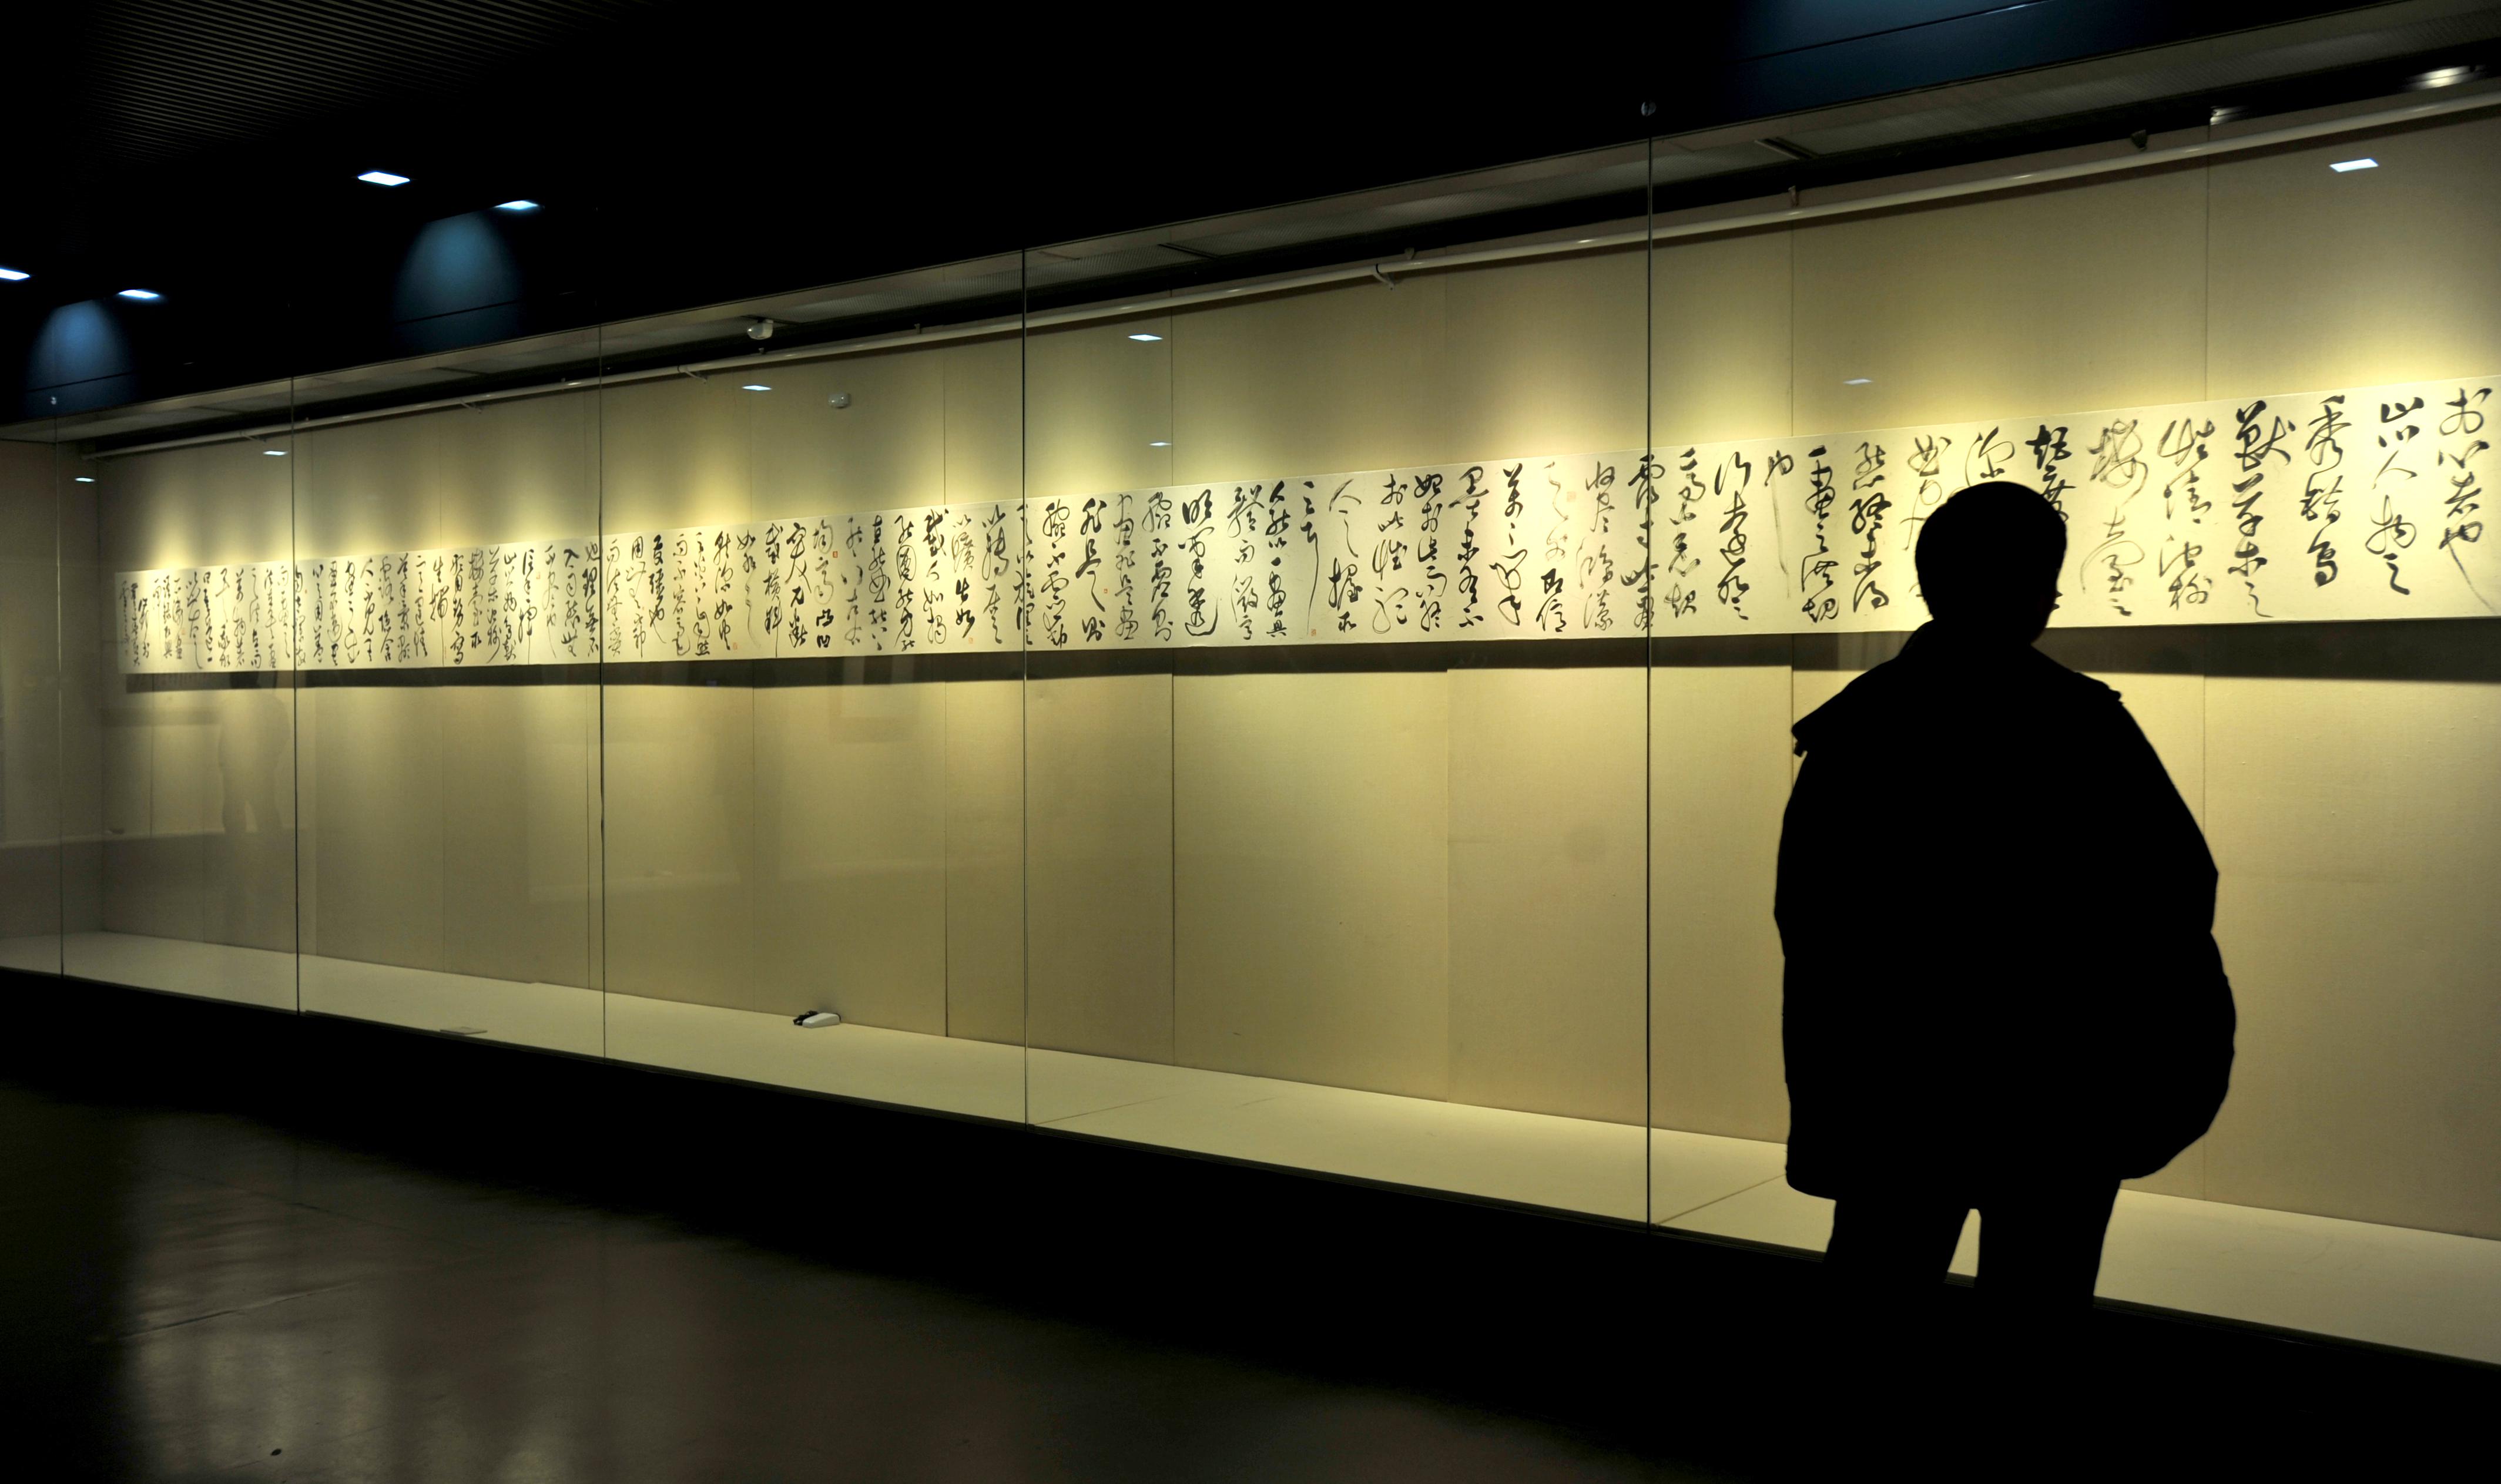 许静书法展览《纵横可象》在江苏省美术馆开